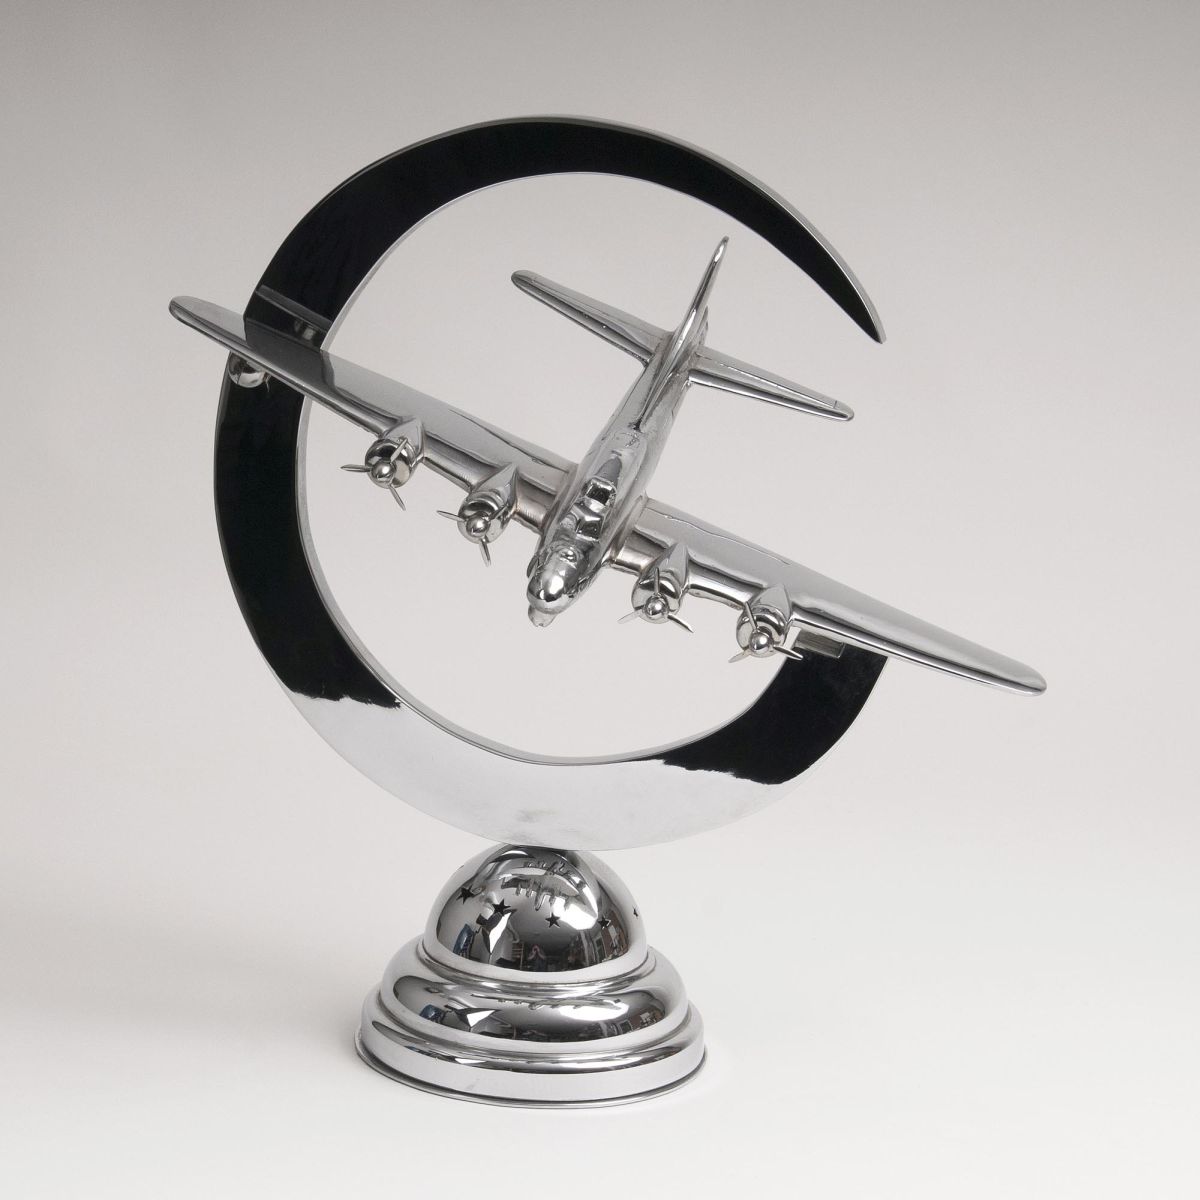 Propellerflugzeug-Modell als Tischlampe